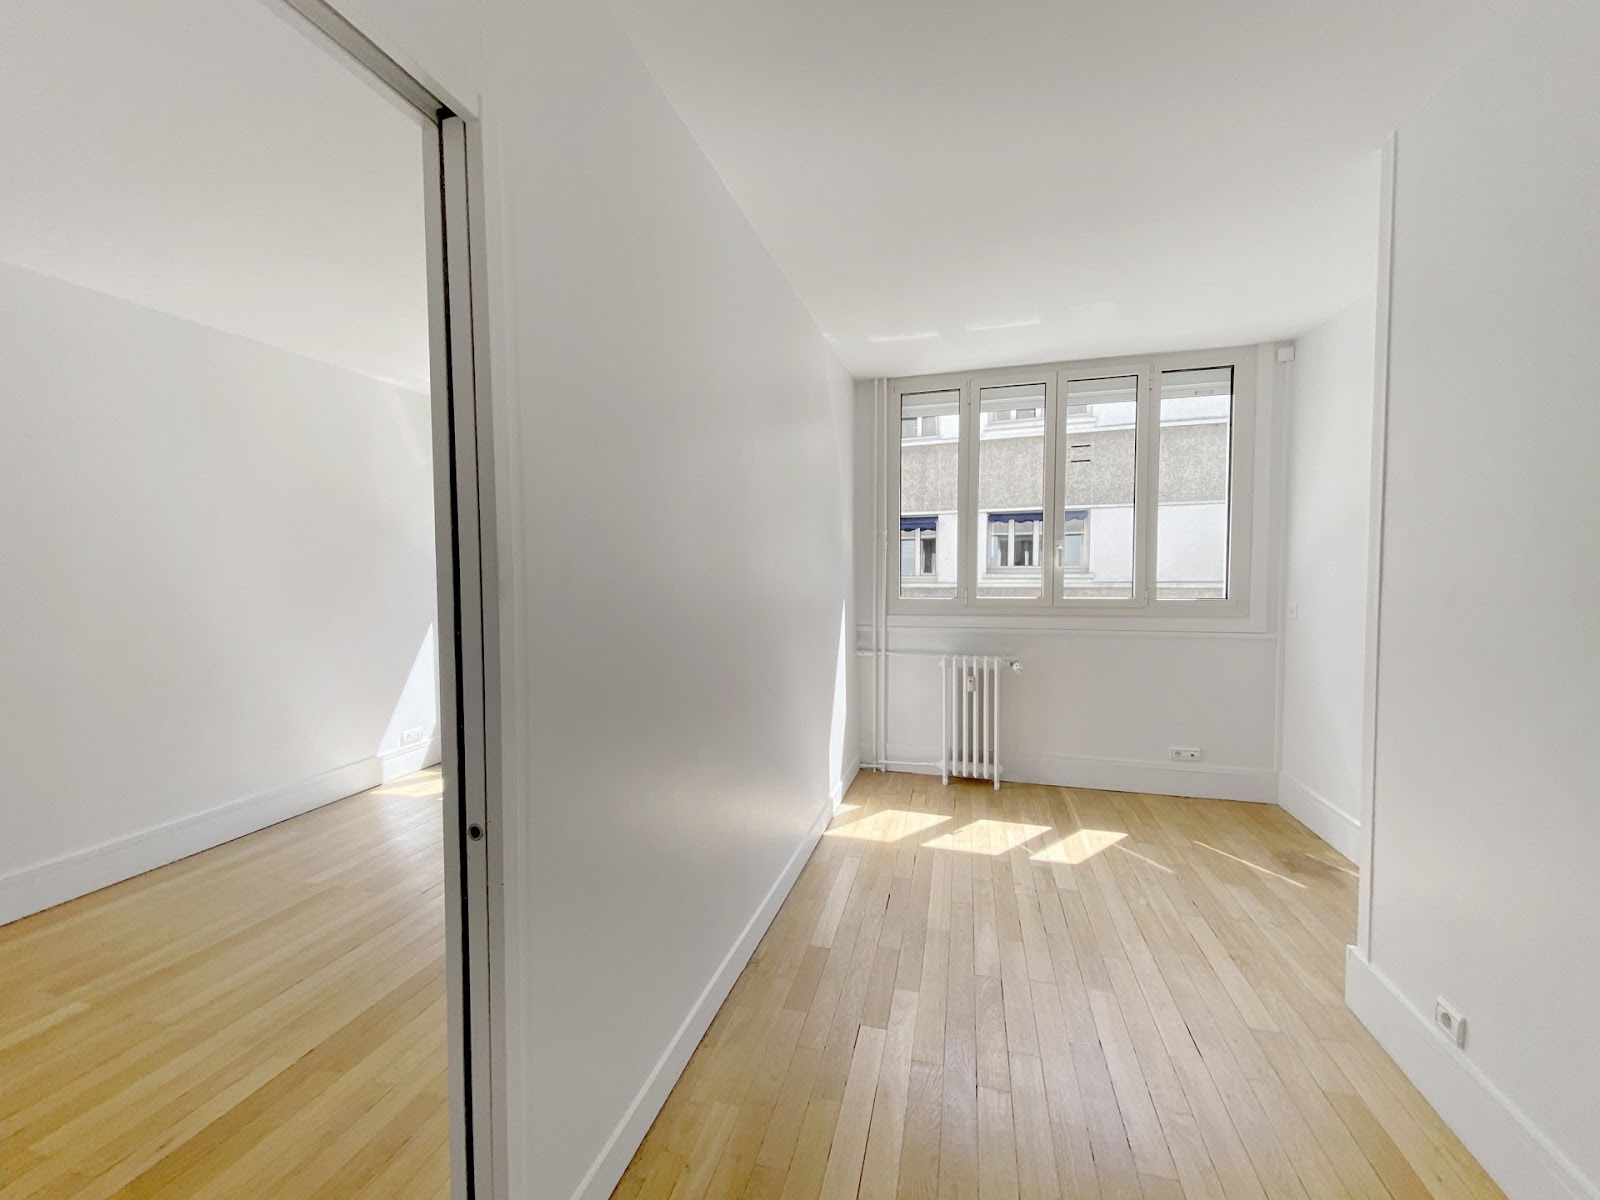 Location appartement 5 pièces 141 m2